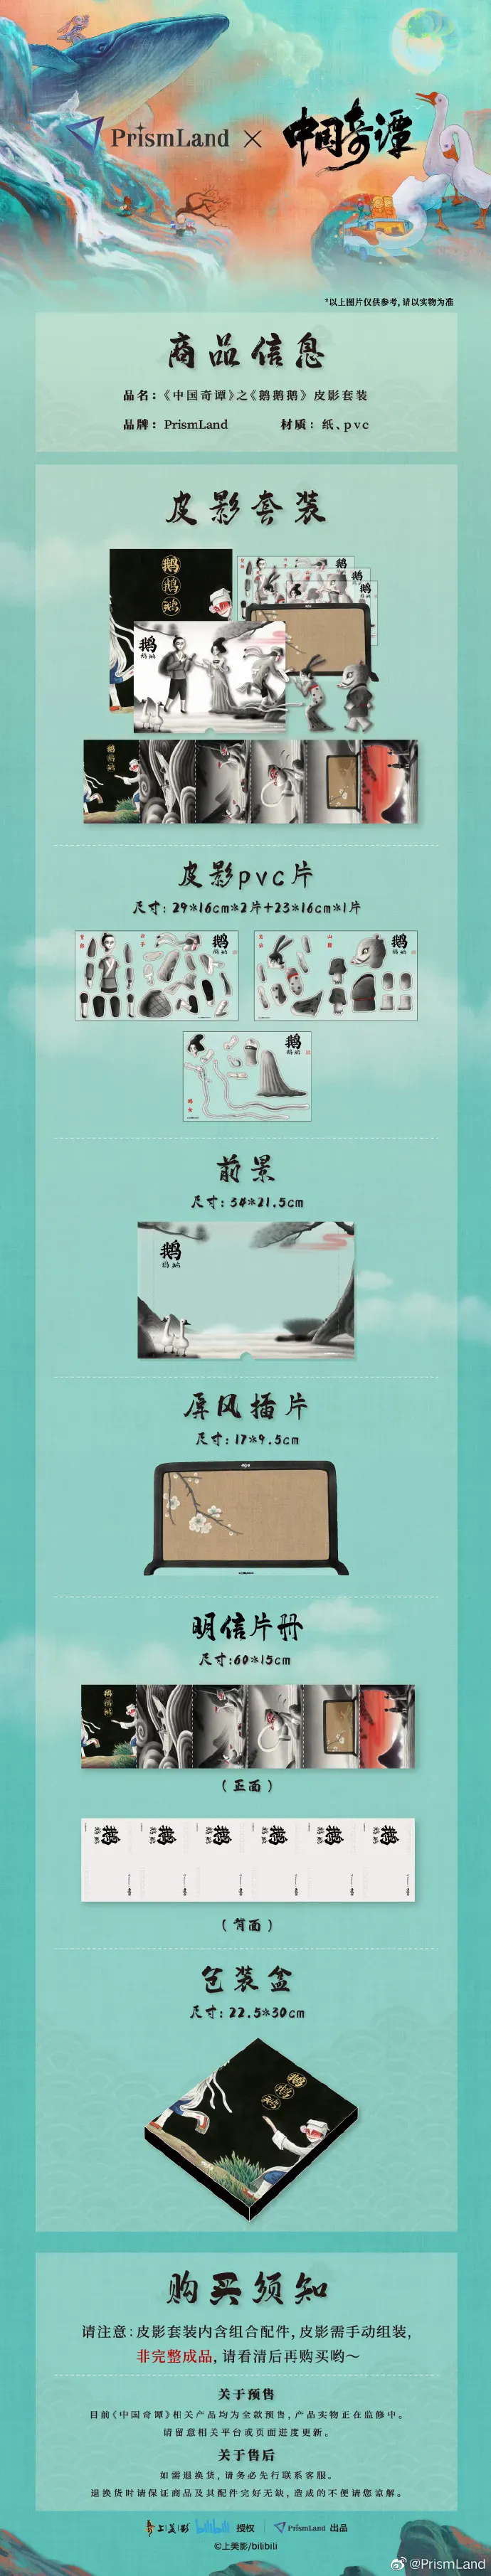 Original Merchandise 中国奇谭 image document